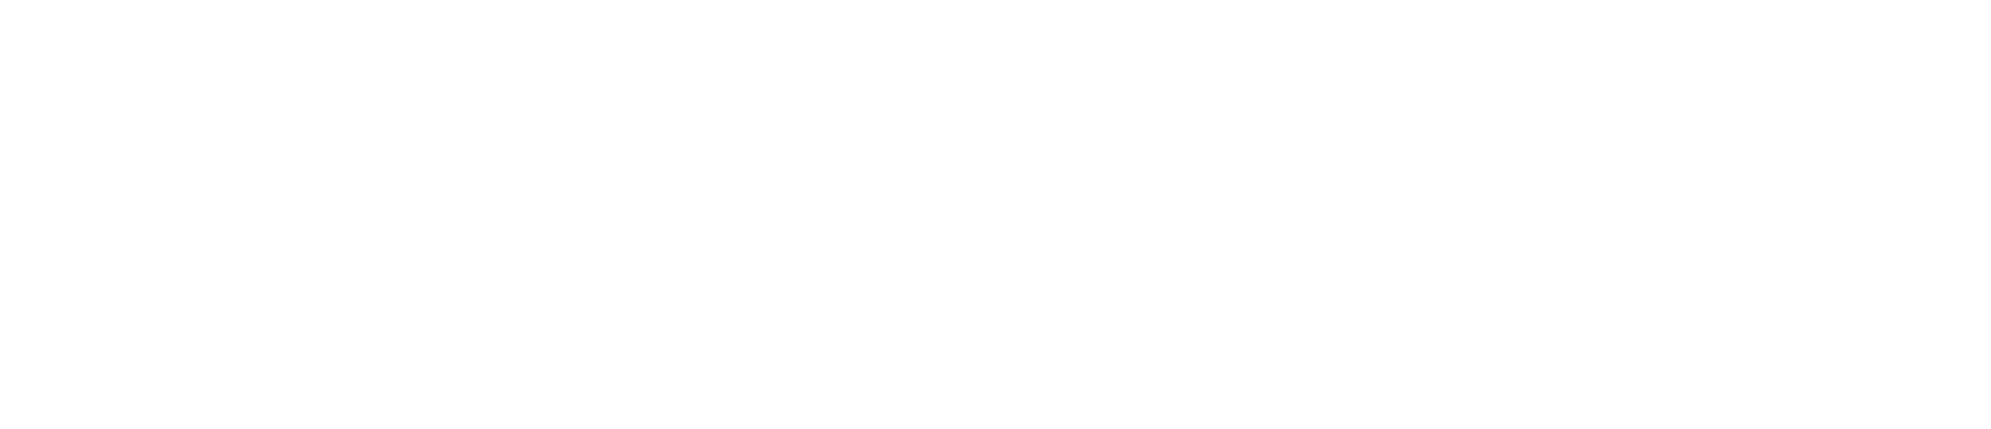 61 Chevrolet Corvette